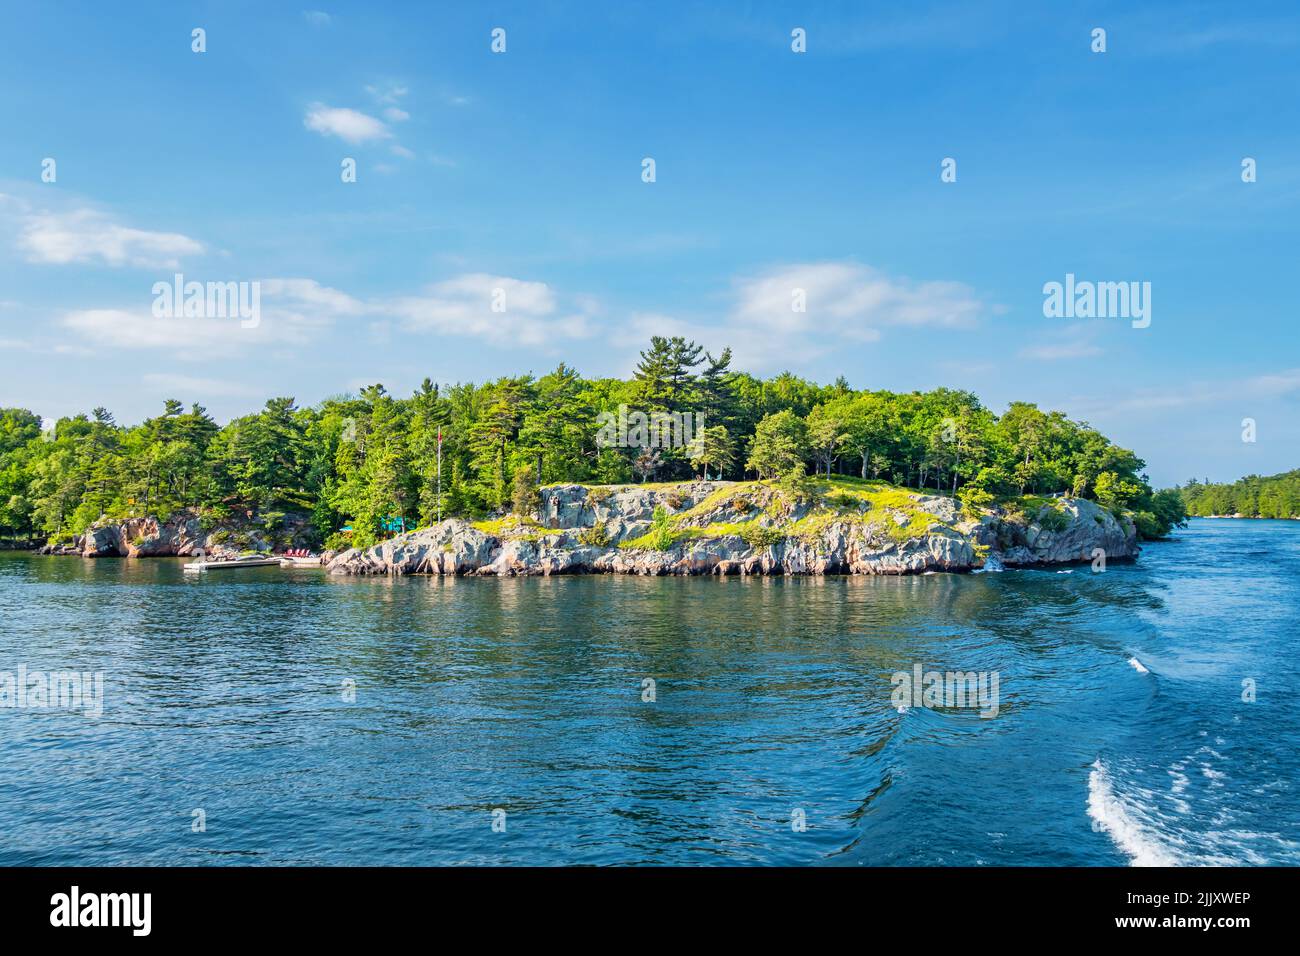 Les îles et le fleuve Saint-Laurent dans la région des mille-Îles entre l'Ontario, le Canada et l'État de New York, les États-Unis Banque D'Images